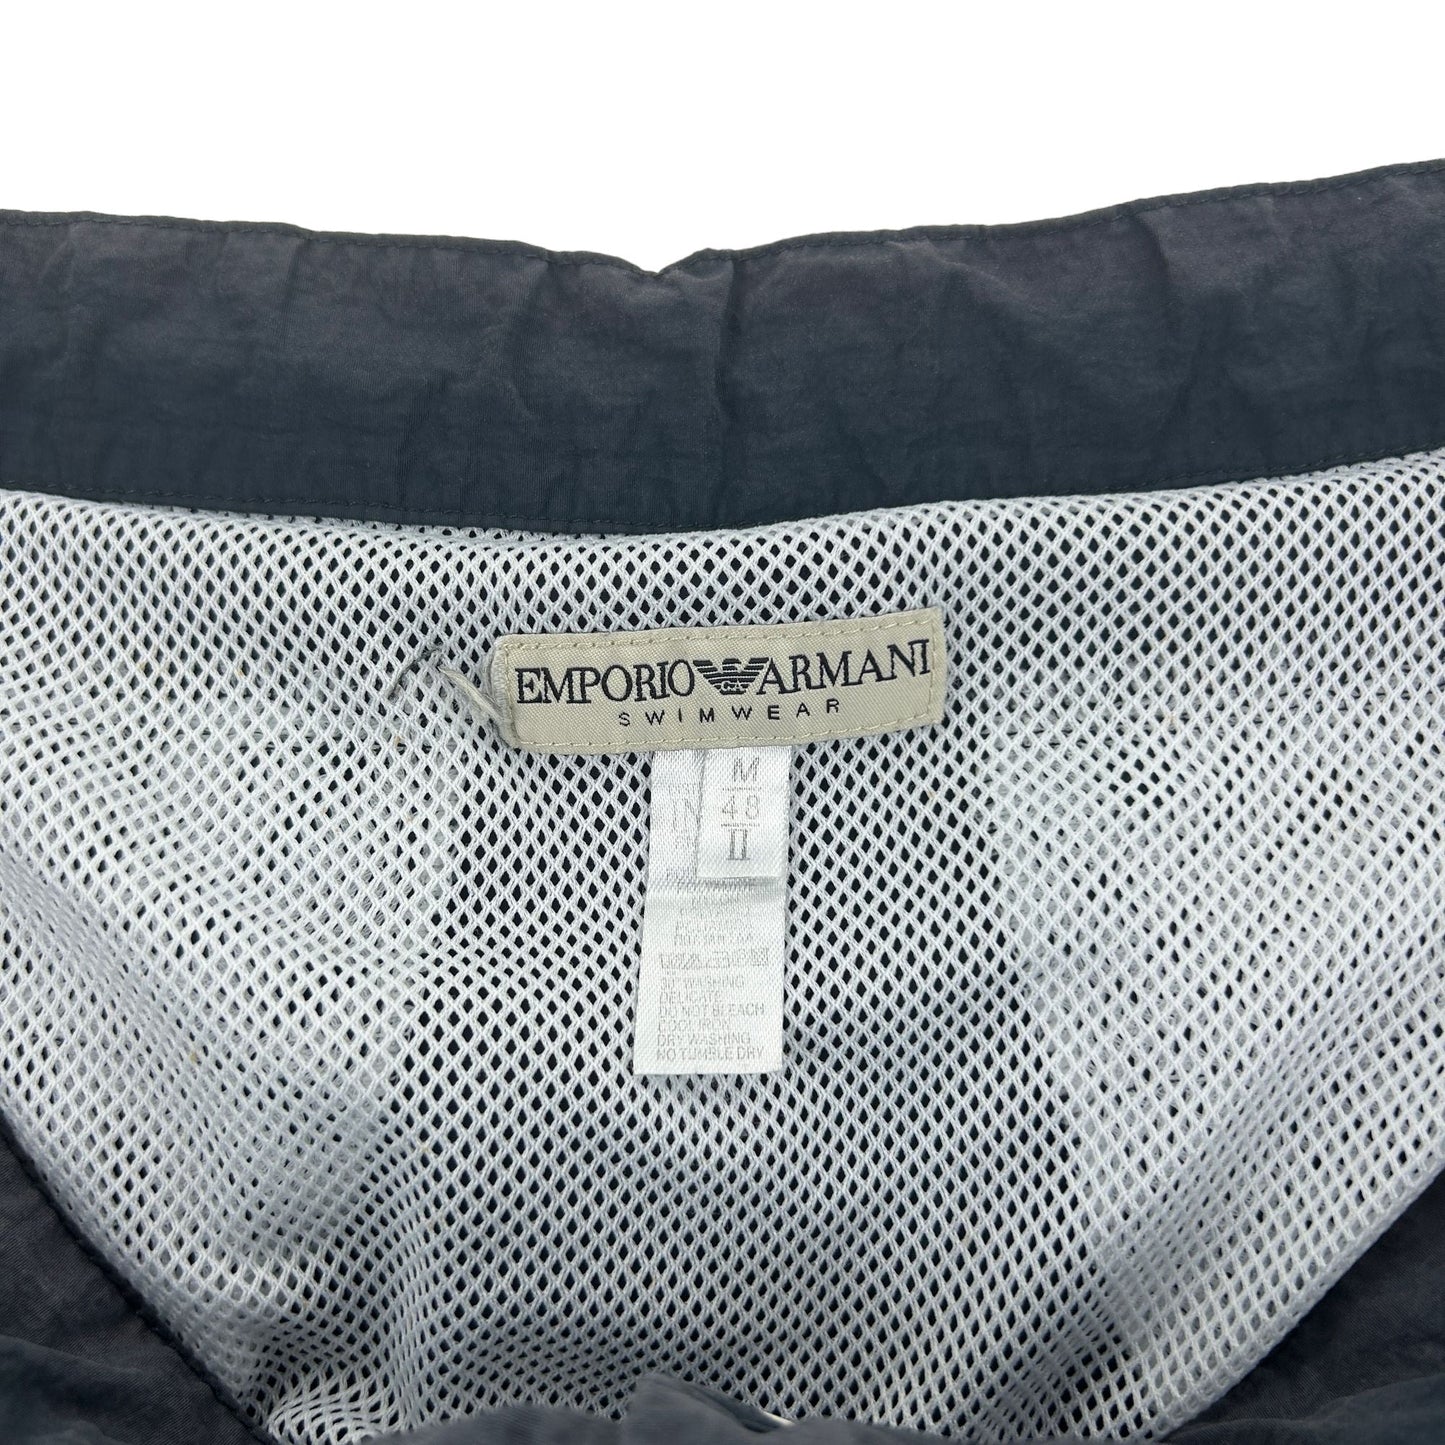 Vintage Emporio Armani Logo Swim Shorts Size W32